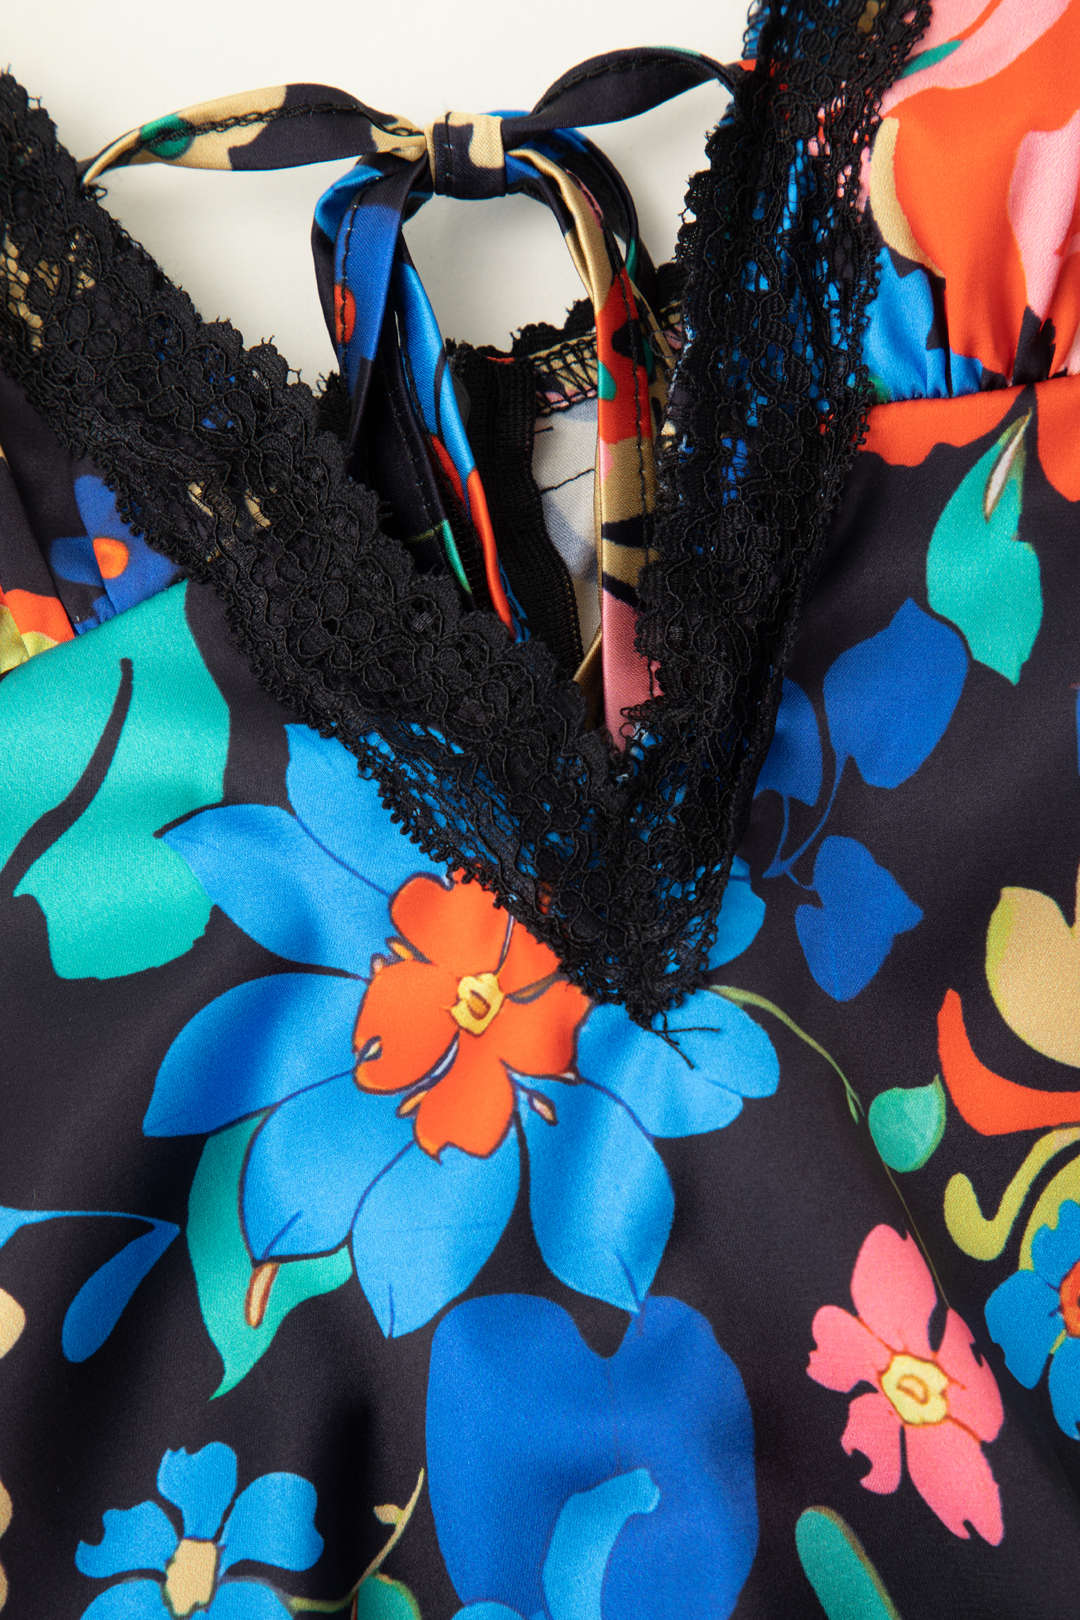 Floral Print Lace Trim V-neck Maxi Dress – Micas